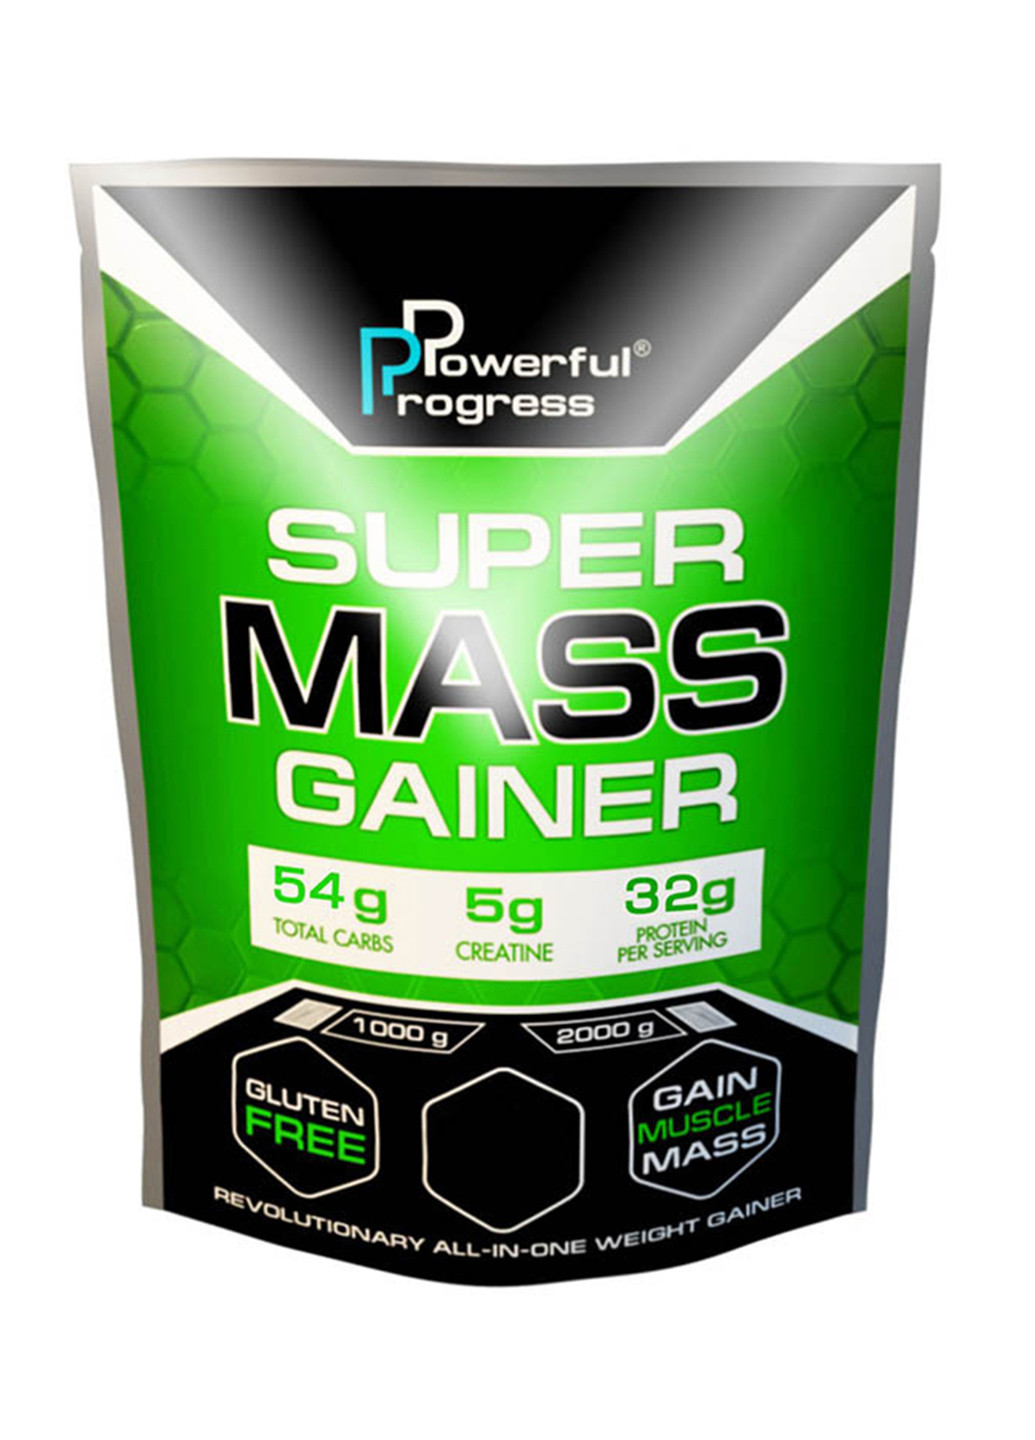 Вуглеводний гейнер Super Mass Gainer - 2000g Tiramisu Powerful Progress гейнер (244701385)